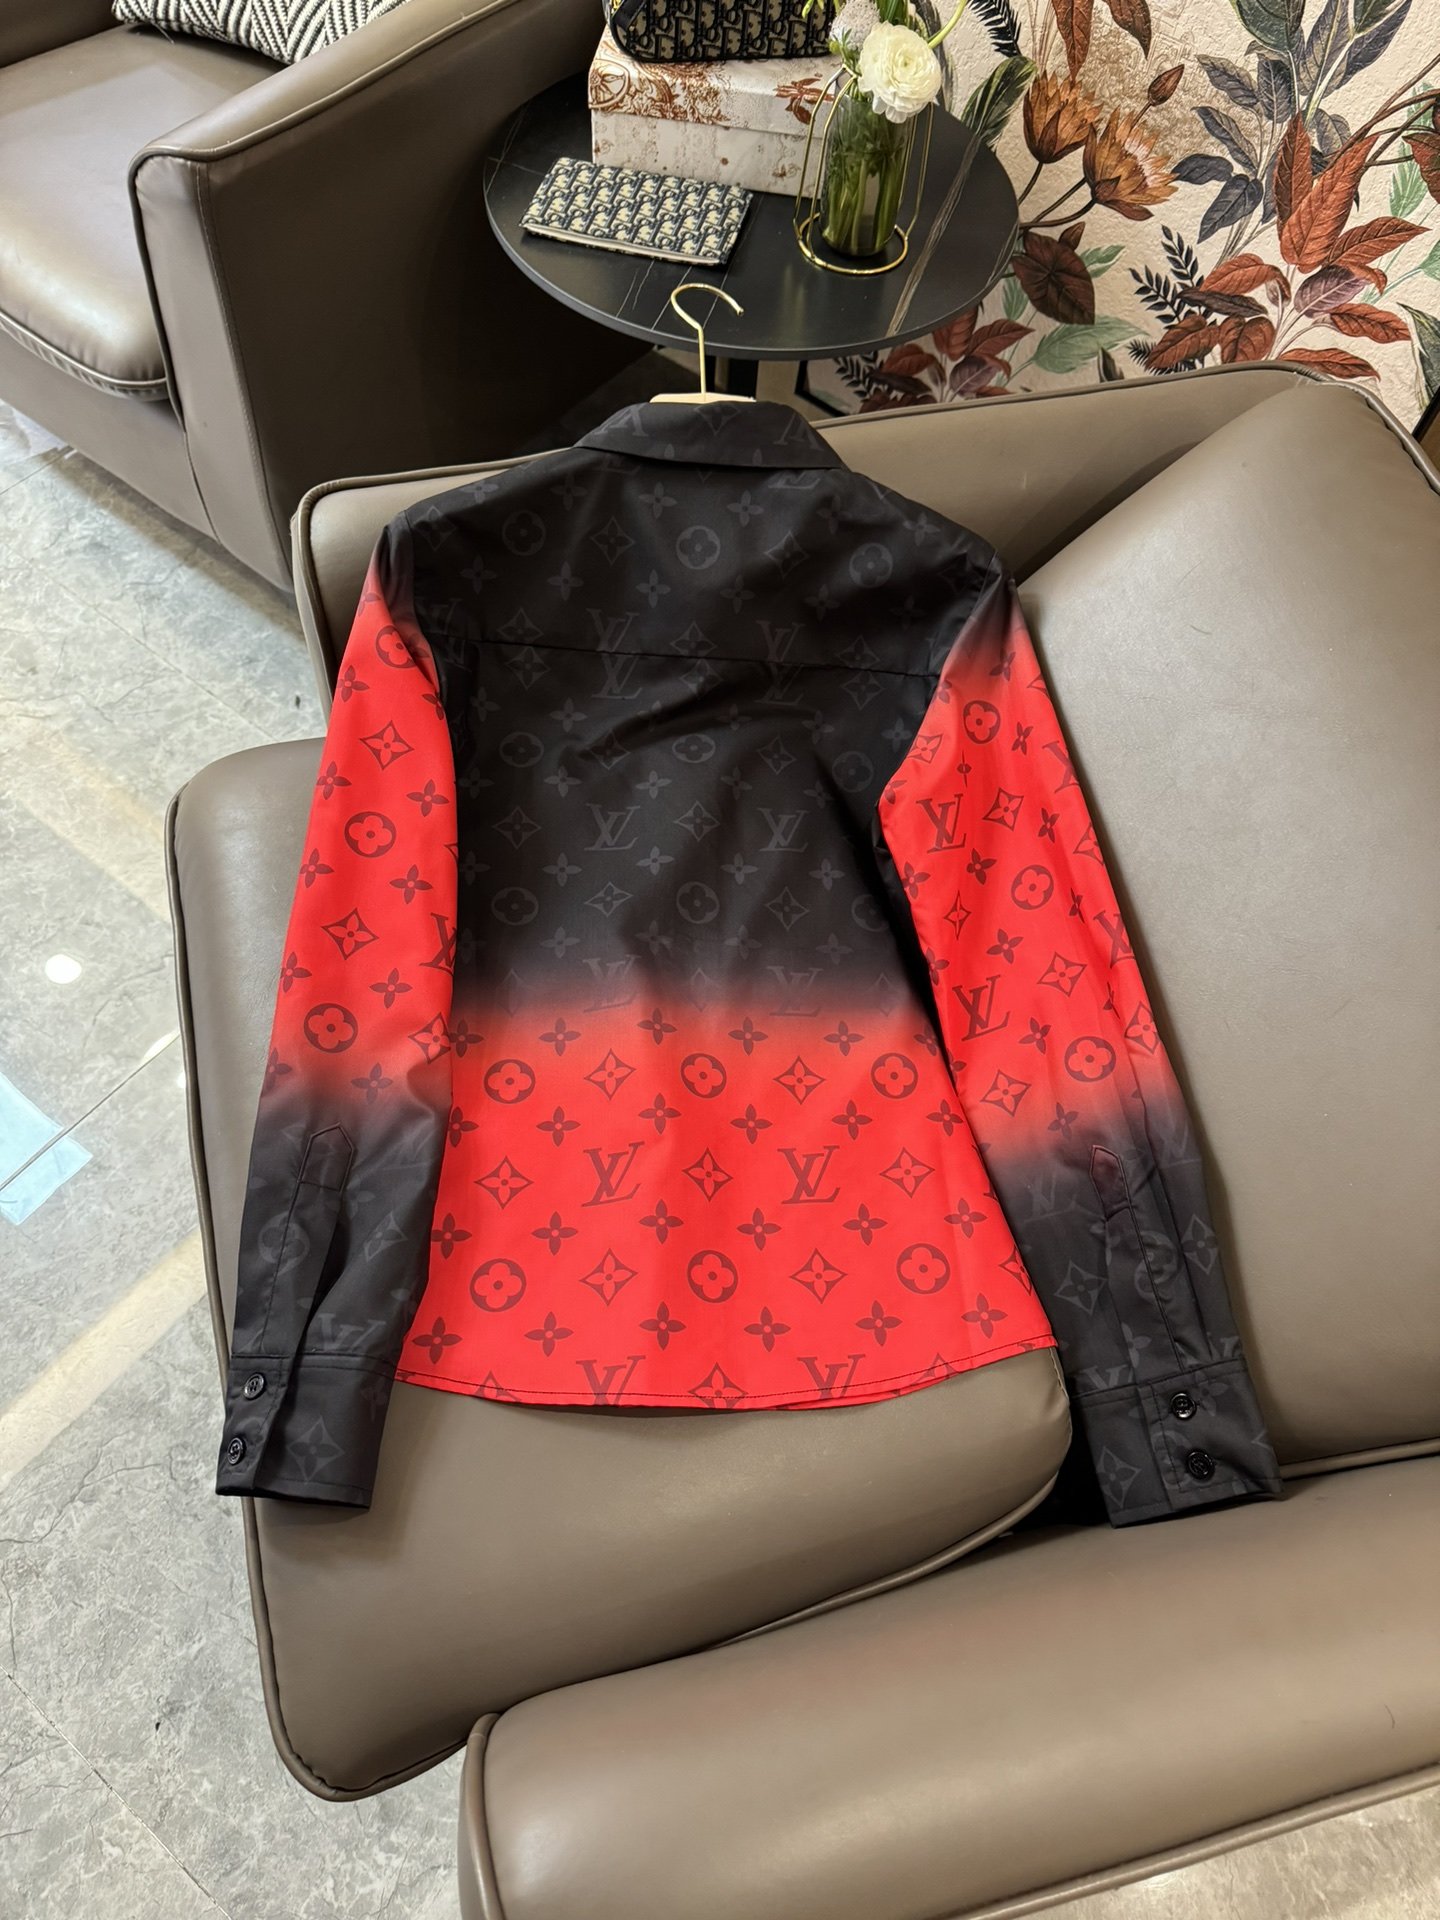 XC24051#新款衬衫LV渐变色logo印花长袖衬衫黑红色SML